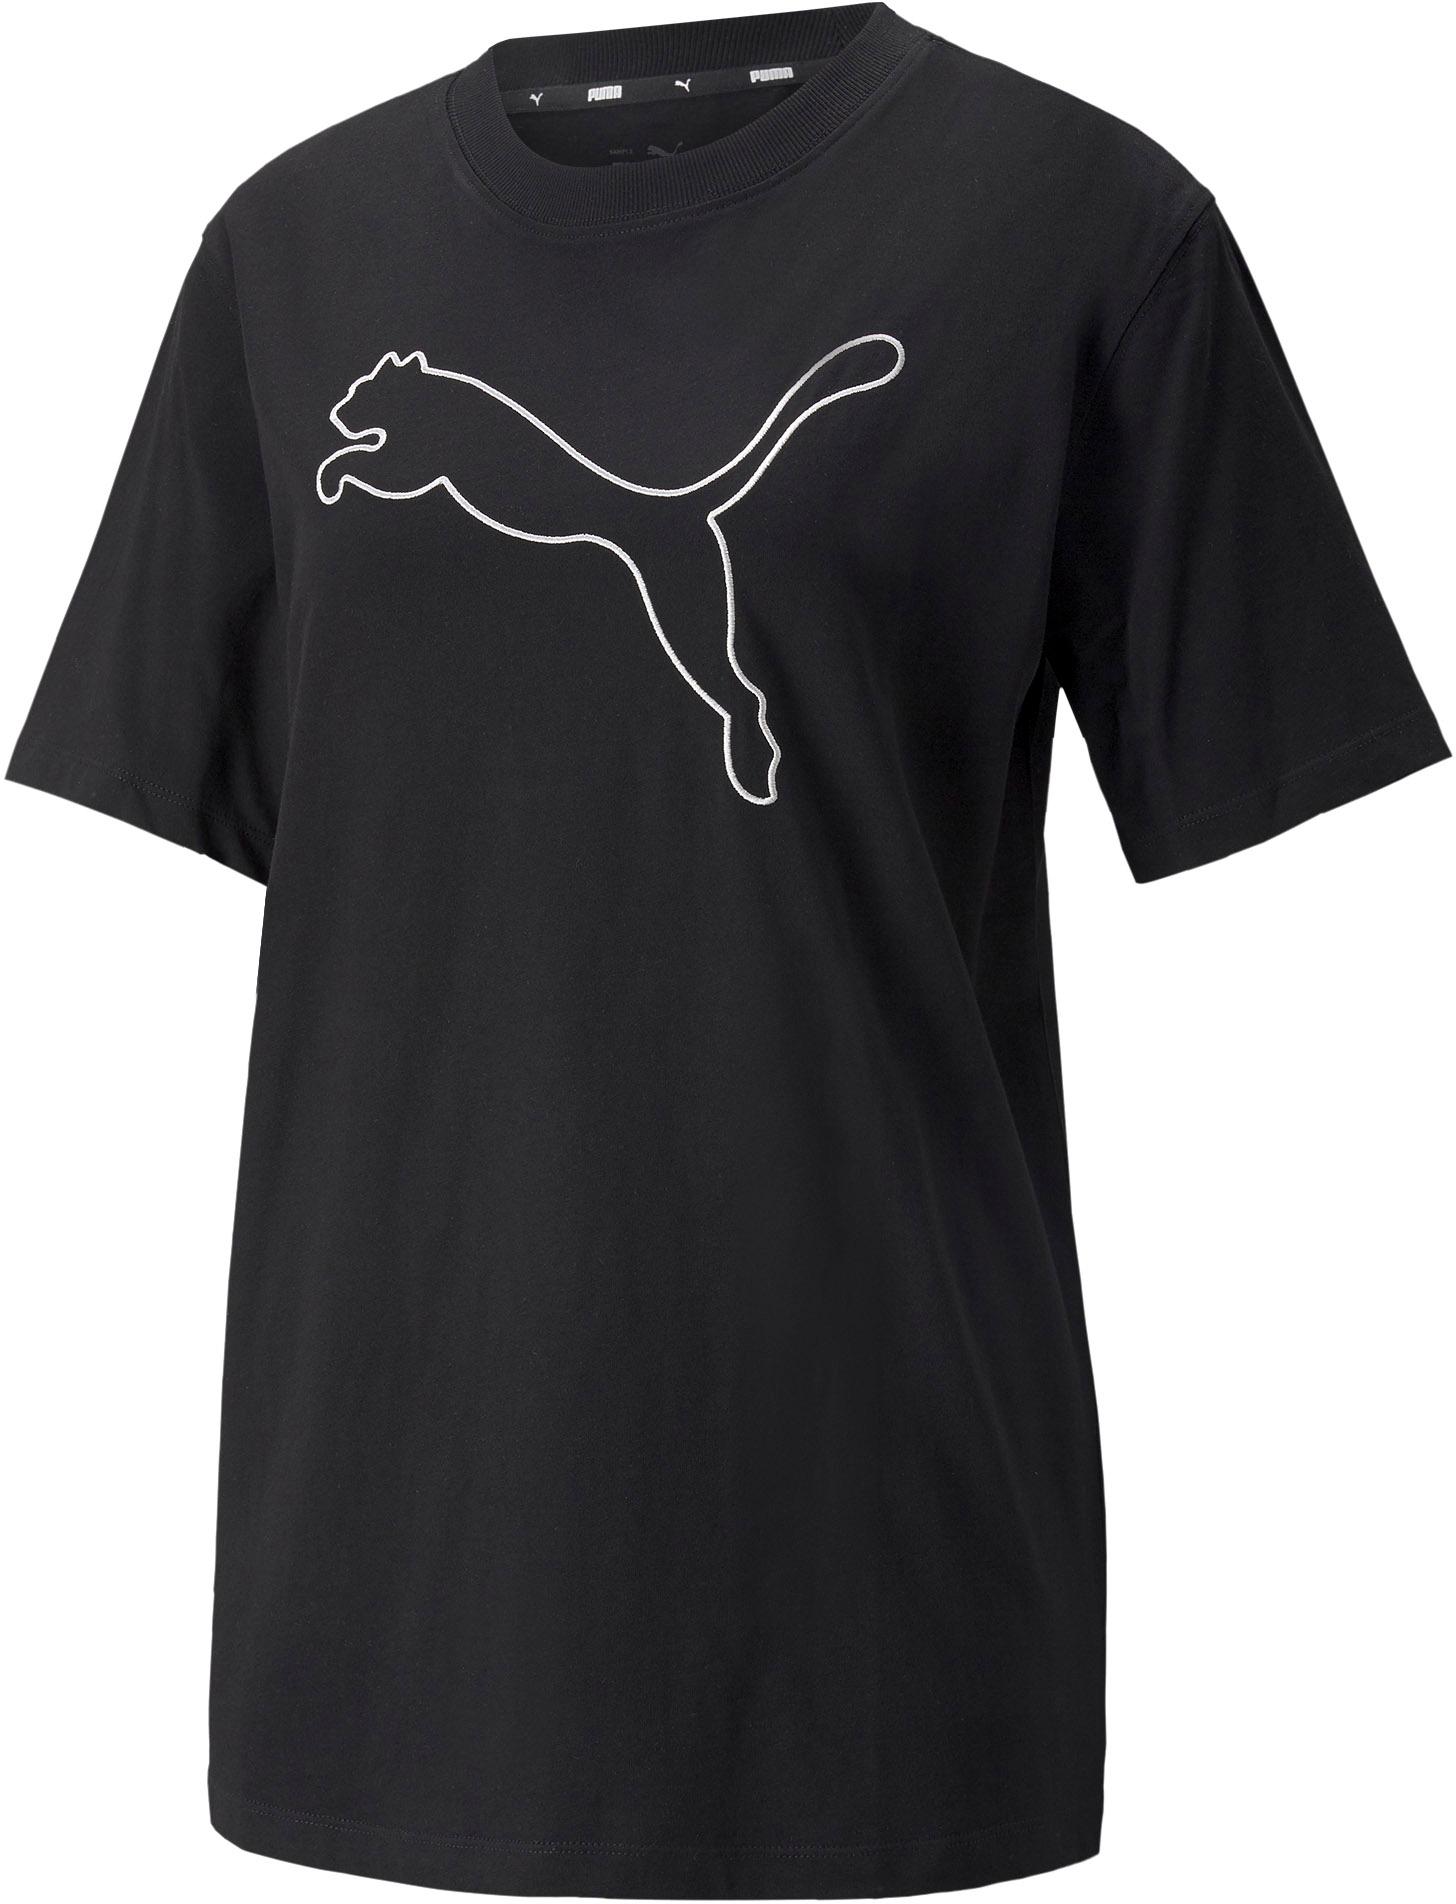 Shop PUMA black im puma HER SportScheck Online kaufen von T-Shirt Damen